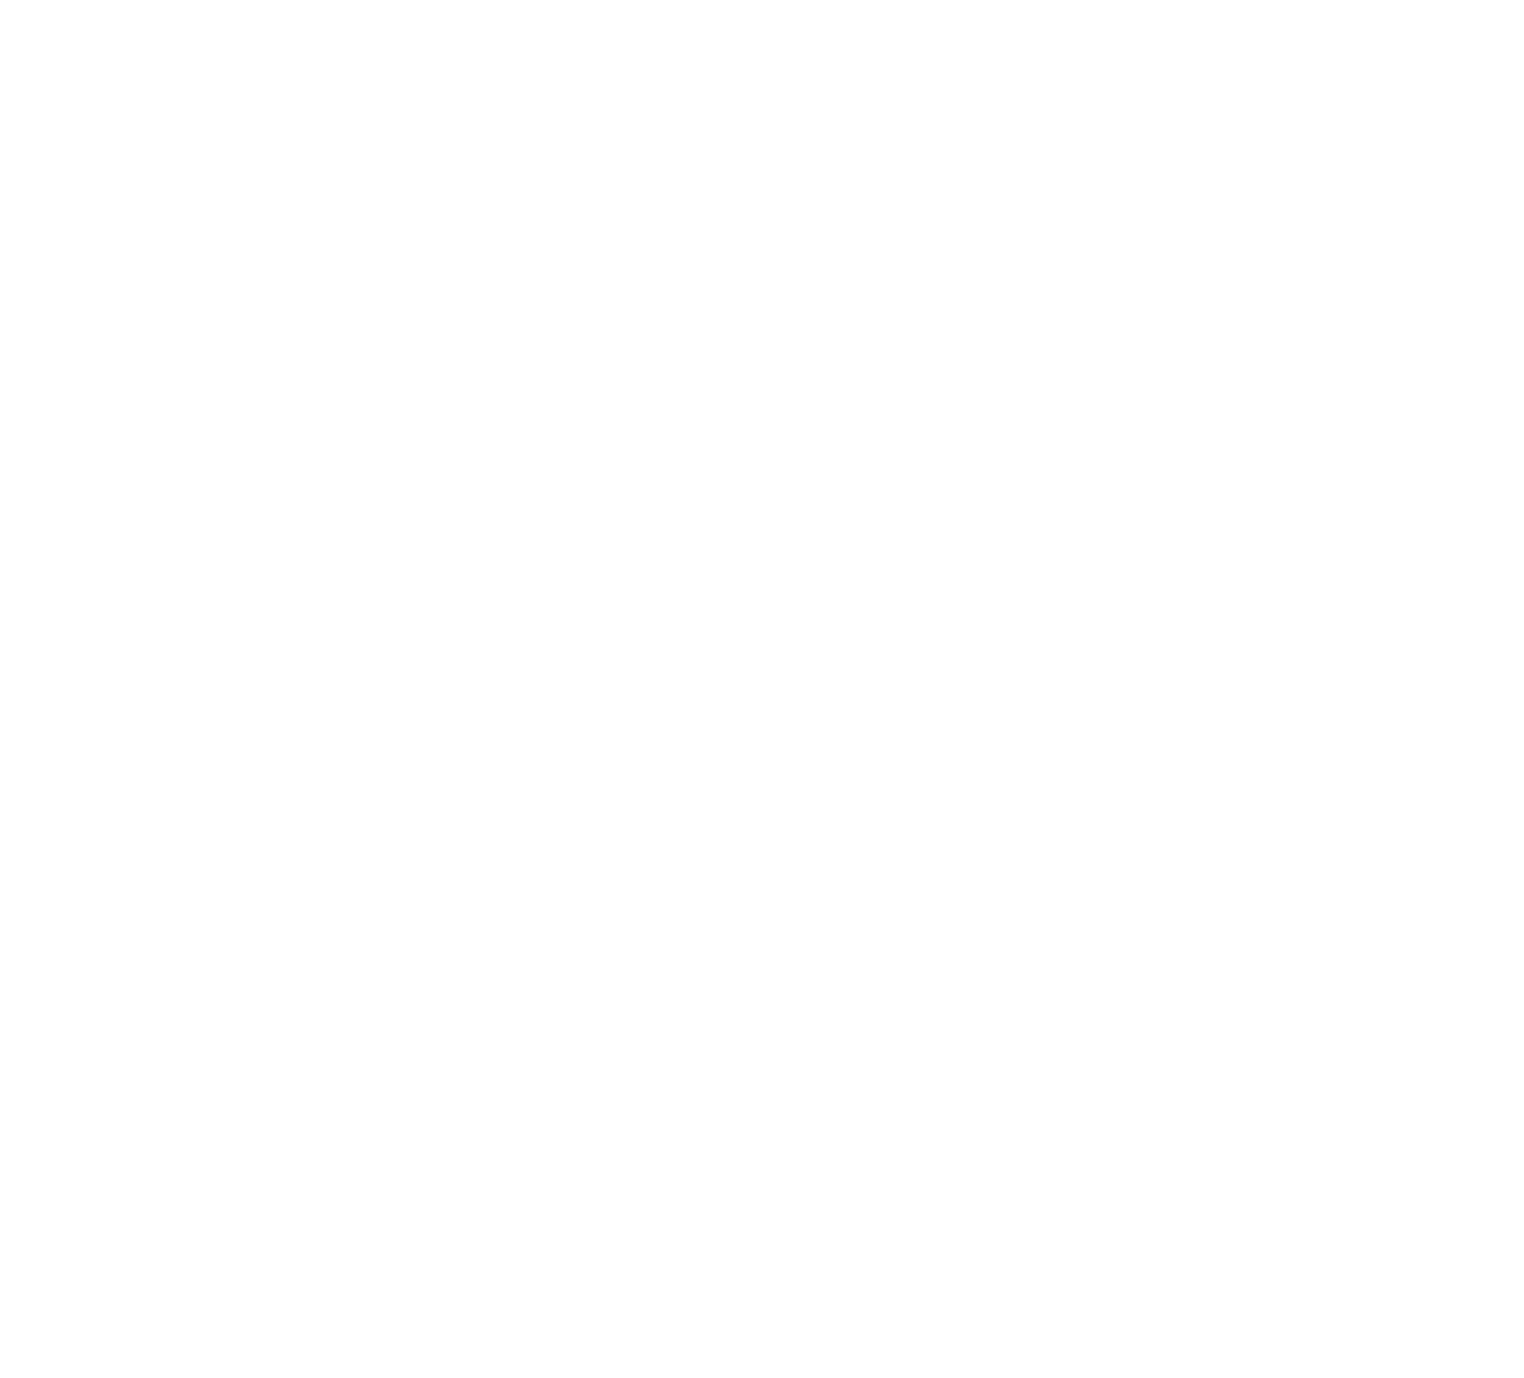 Aaron's logo pour fonds sombres (PNG transparent)